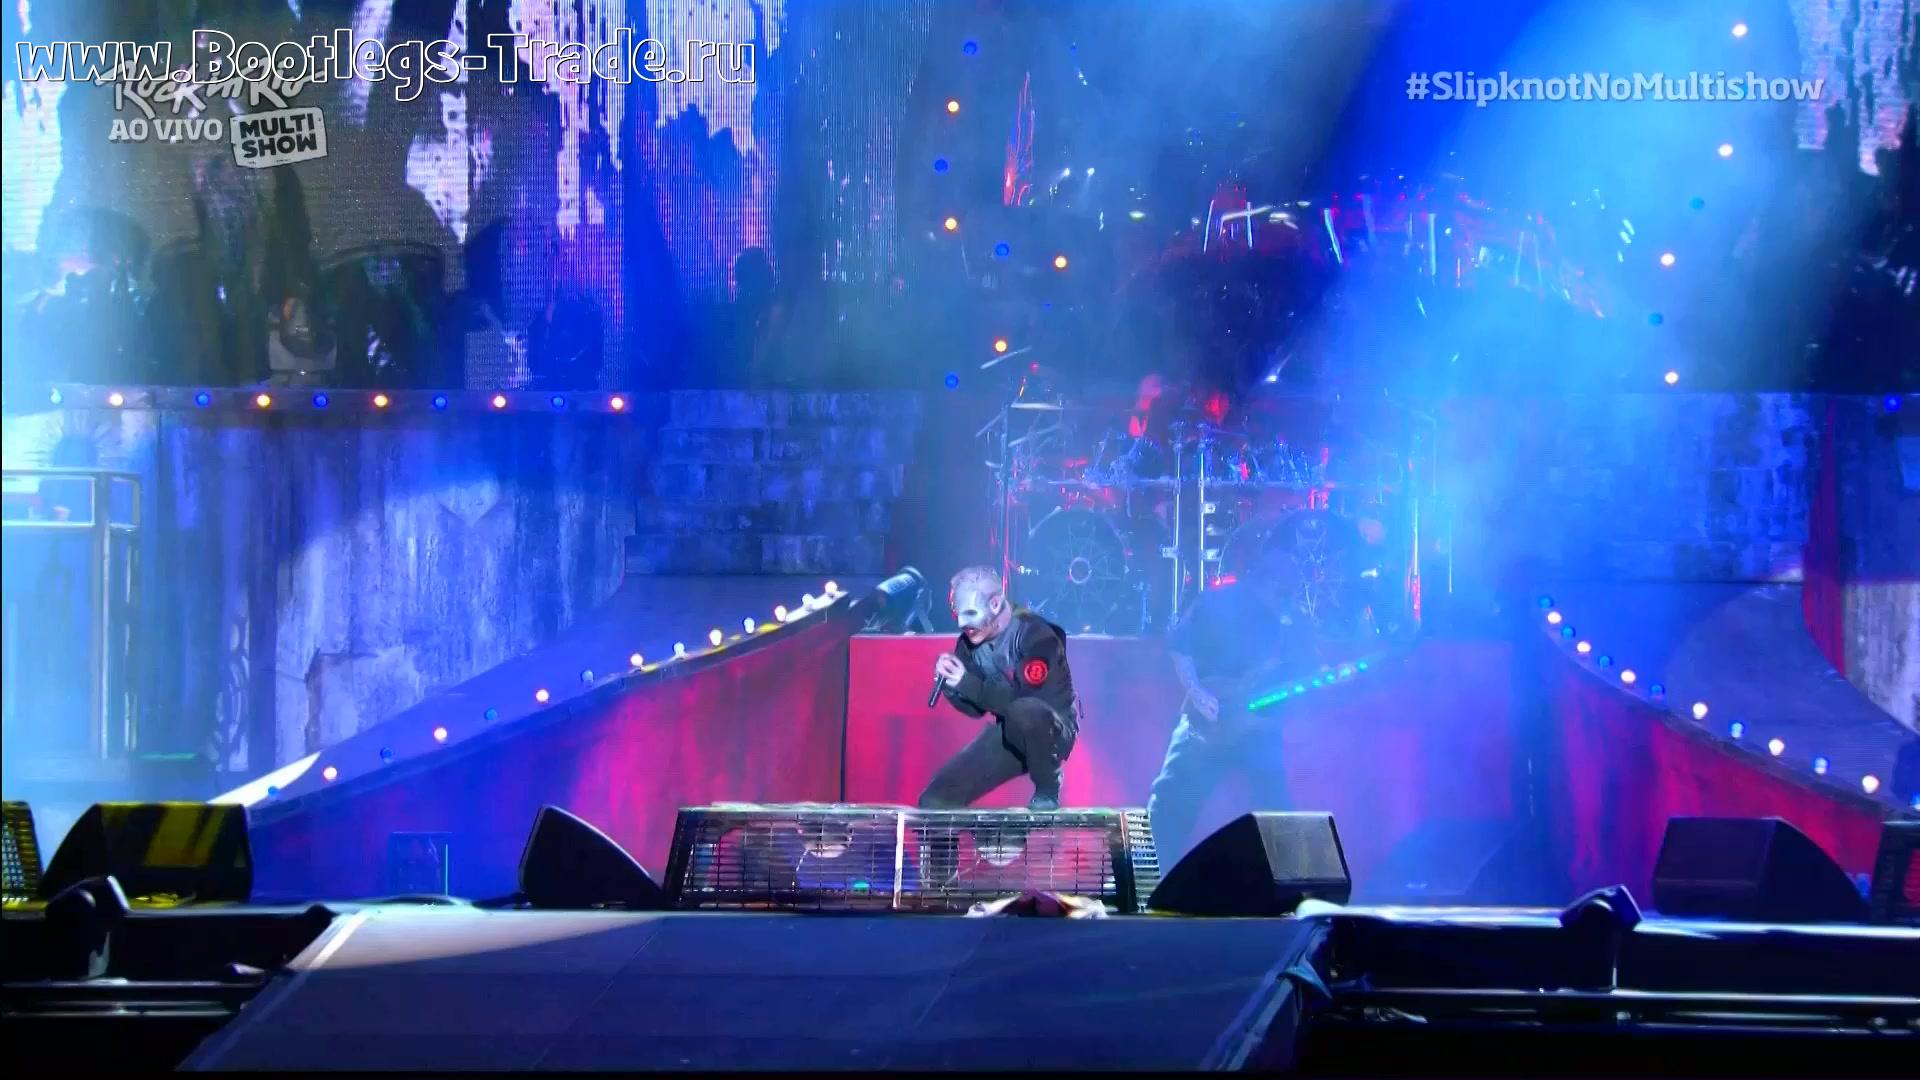 Slipknot 2015-09-25 Rock in Rio 2015, Cidade do Rock, Rio de Janeiro, Brazil (Multishow HD 1080)